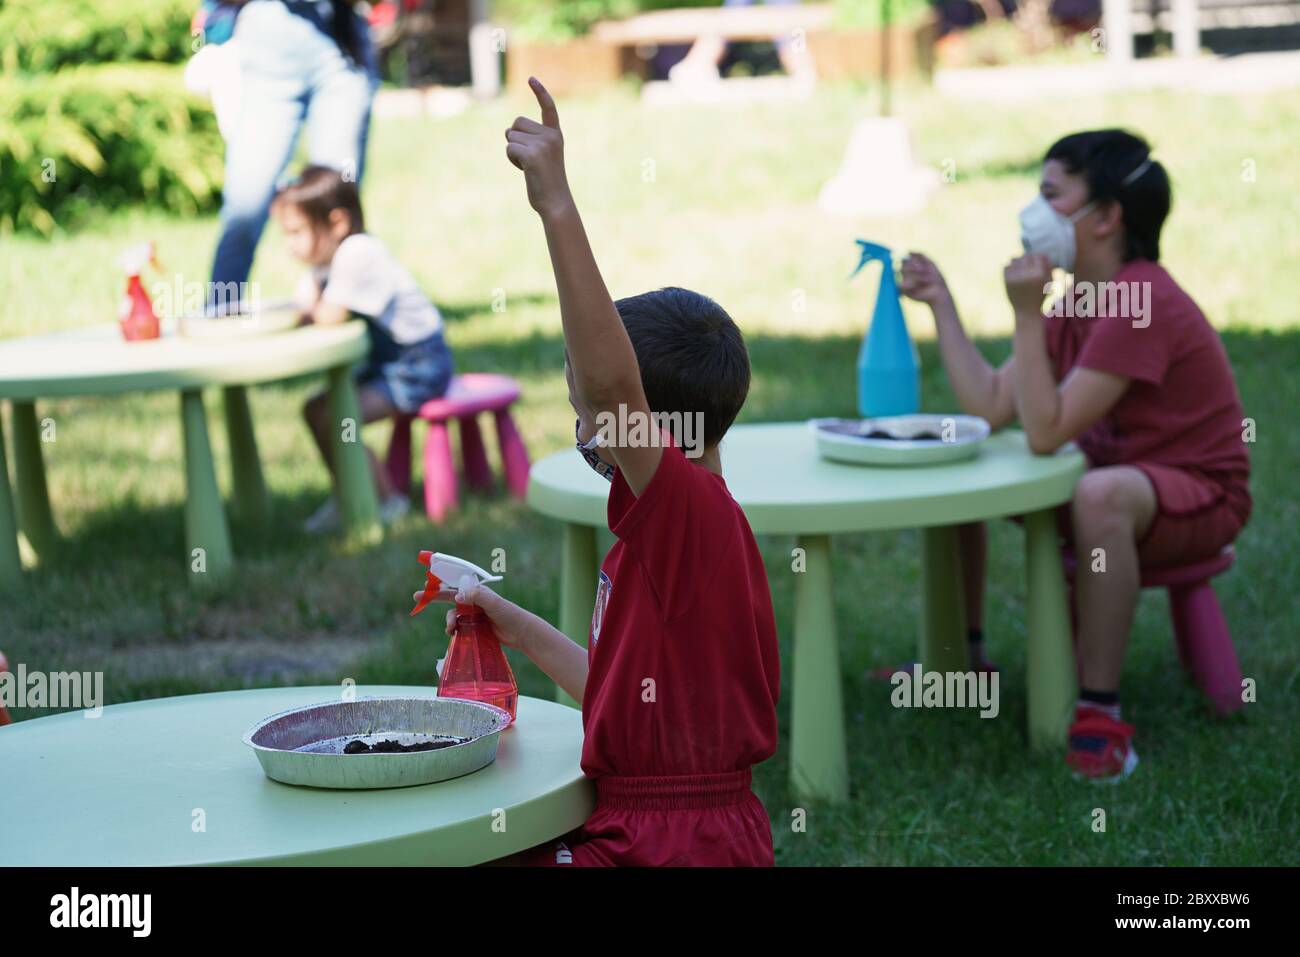 Mode de vie d'une éclosion de coronavirus : activités d'été en plein air à l'école avec mesures de distance sociales. Turin, Italie - juin 2020 Banque D'Images